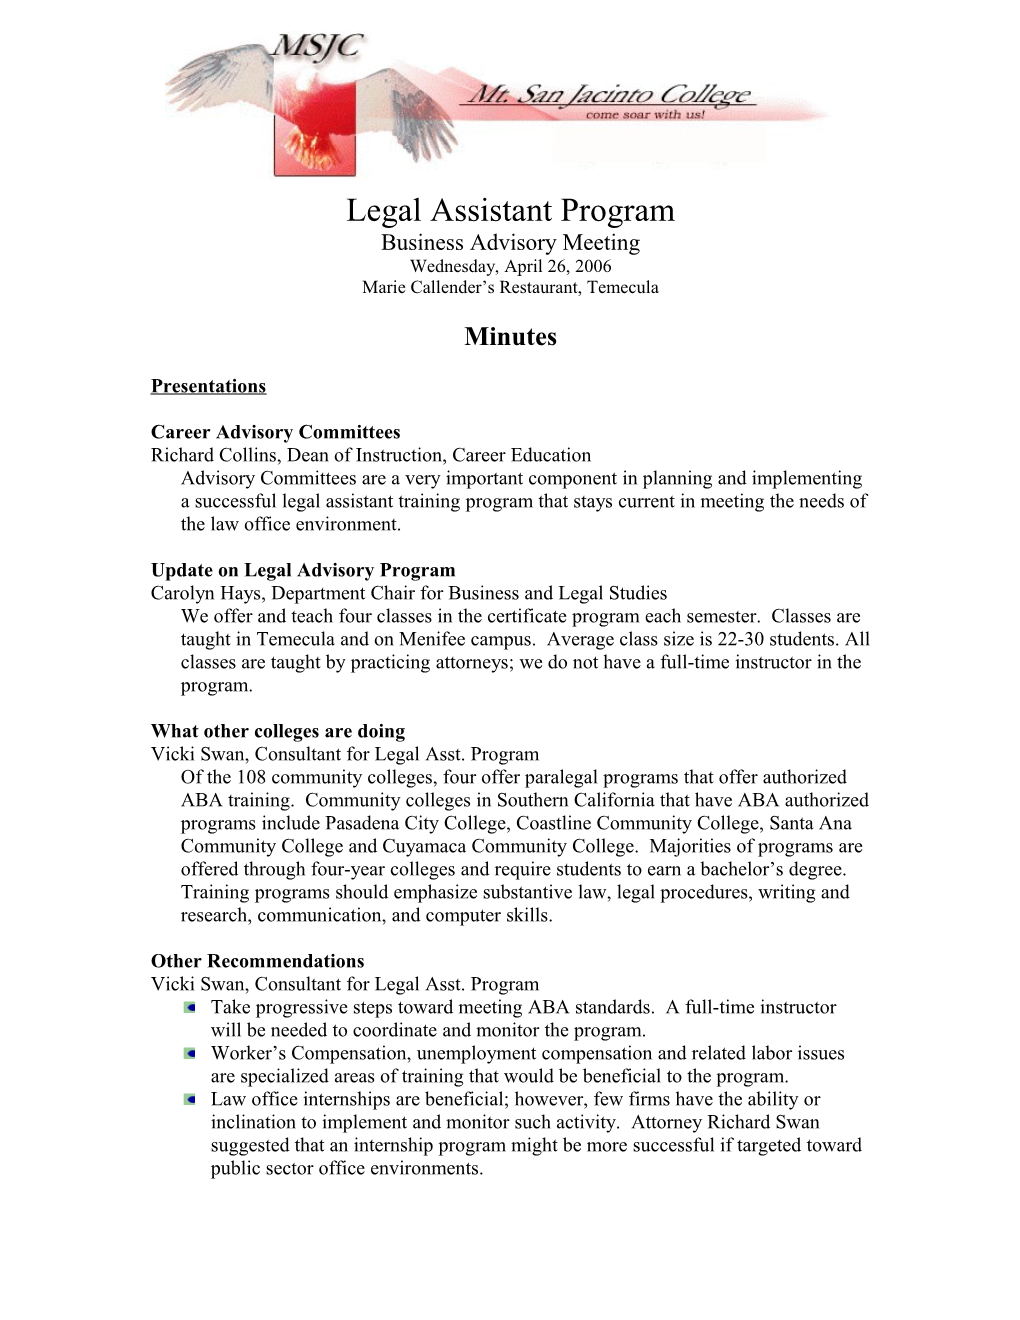 Legal Assistant Minutes 4-26-06